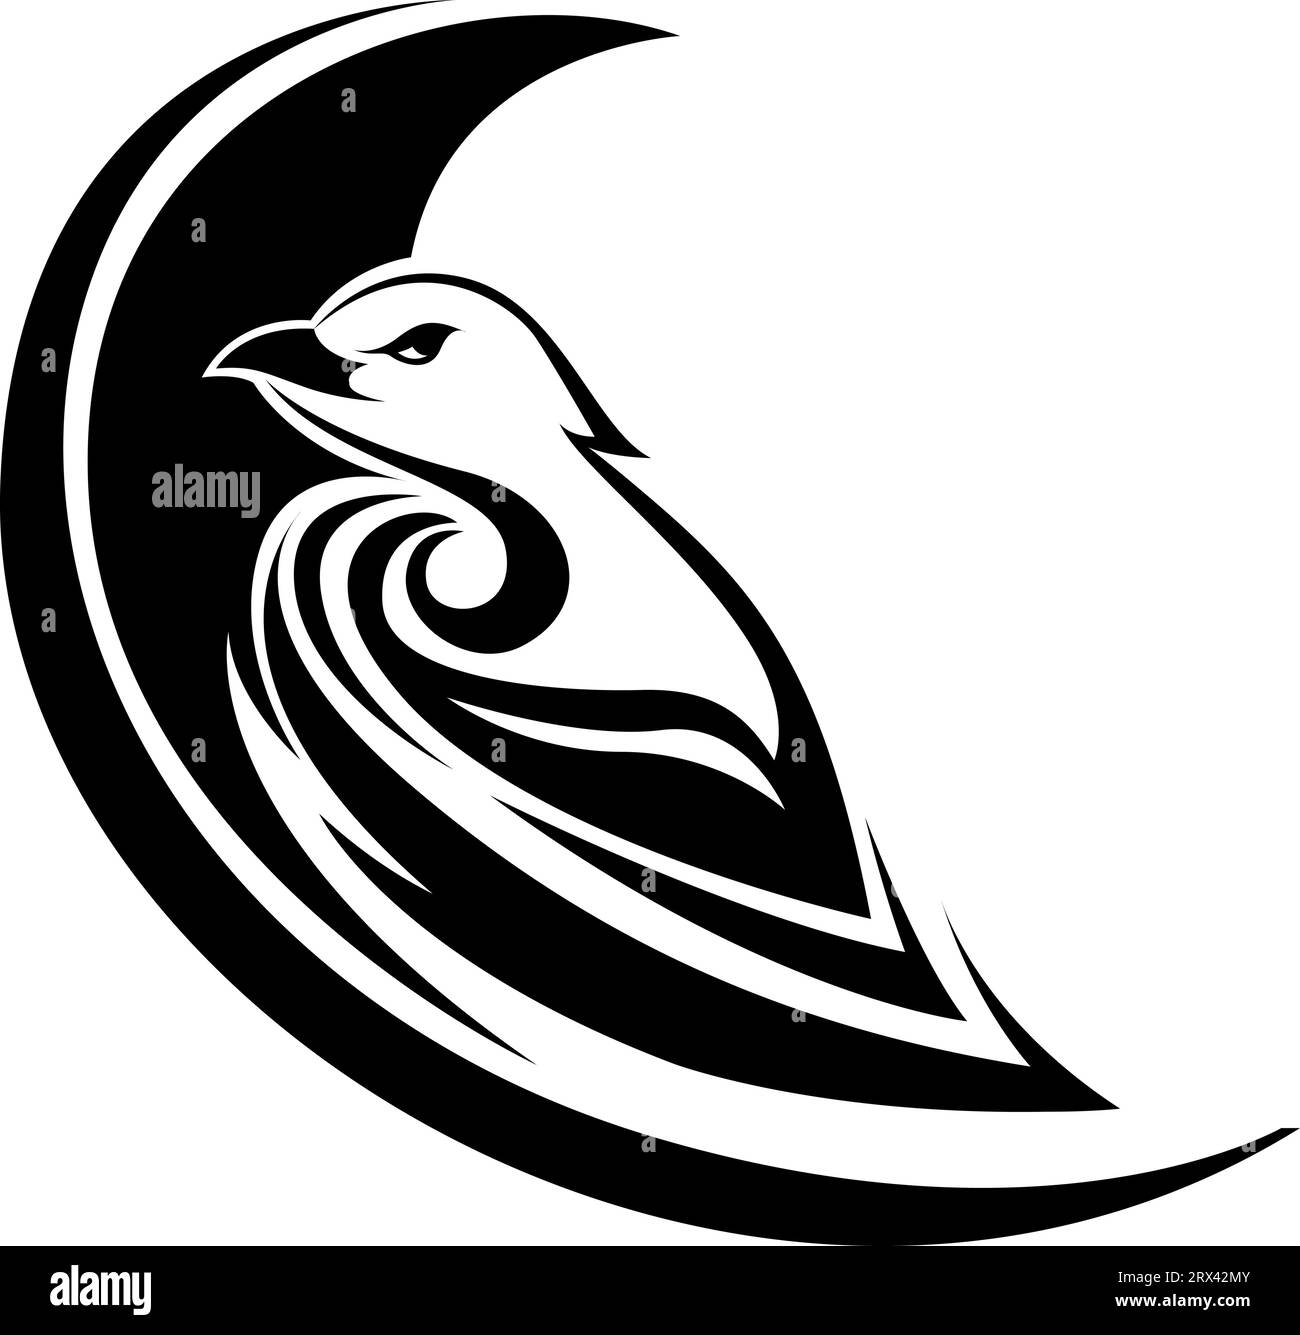 Tatouage d'oiseau cool, illustration de tatouage, vecteur sur un fond blanc. Illustration de Vecteur